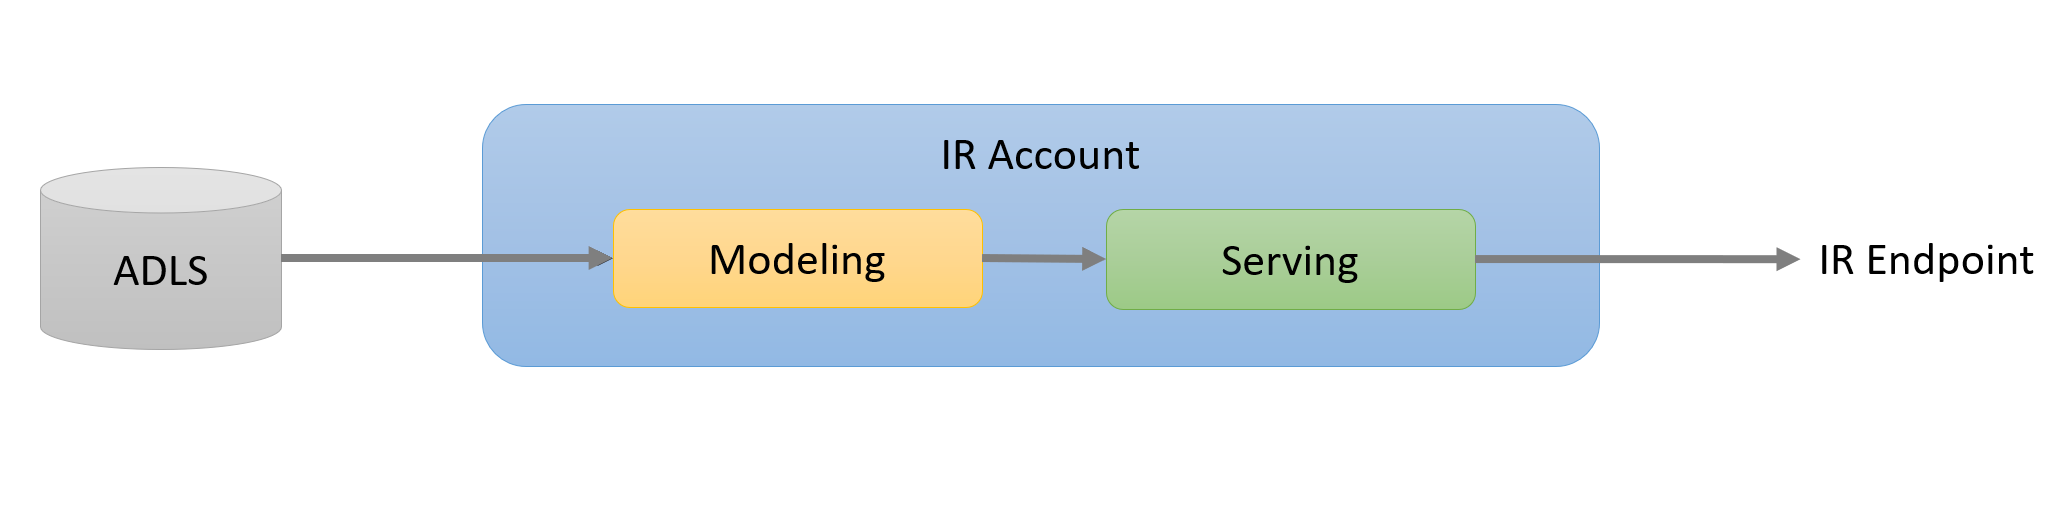 Relación entre las cuentas de Data Lake Storage y las Intelligent Recommendations que sirven punto de conexión.